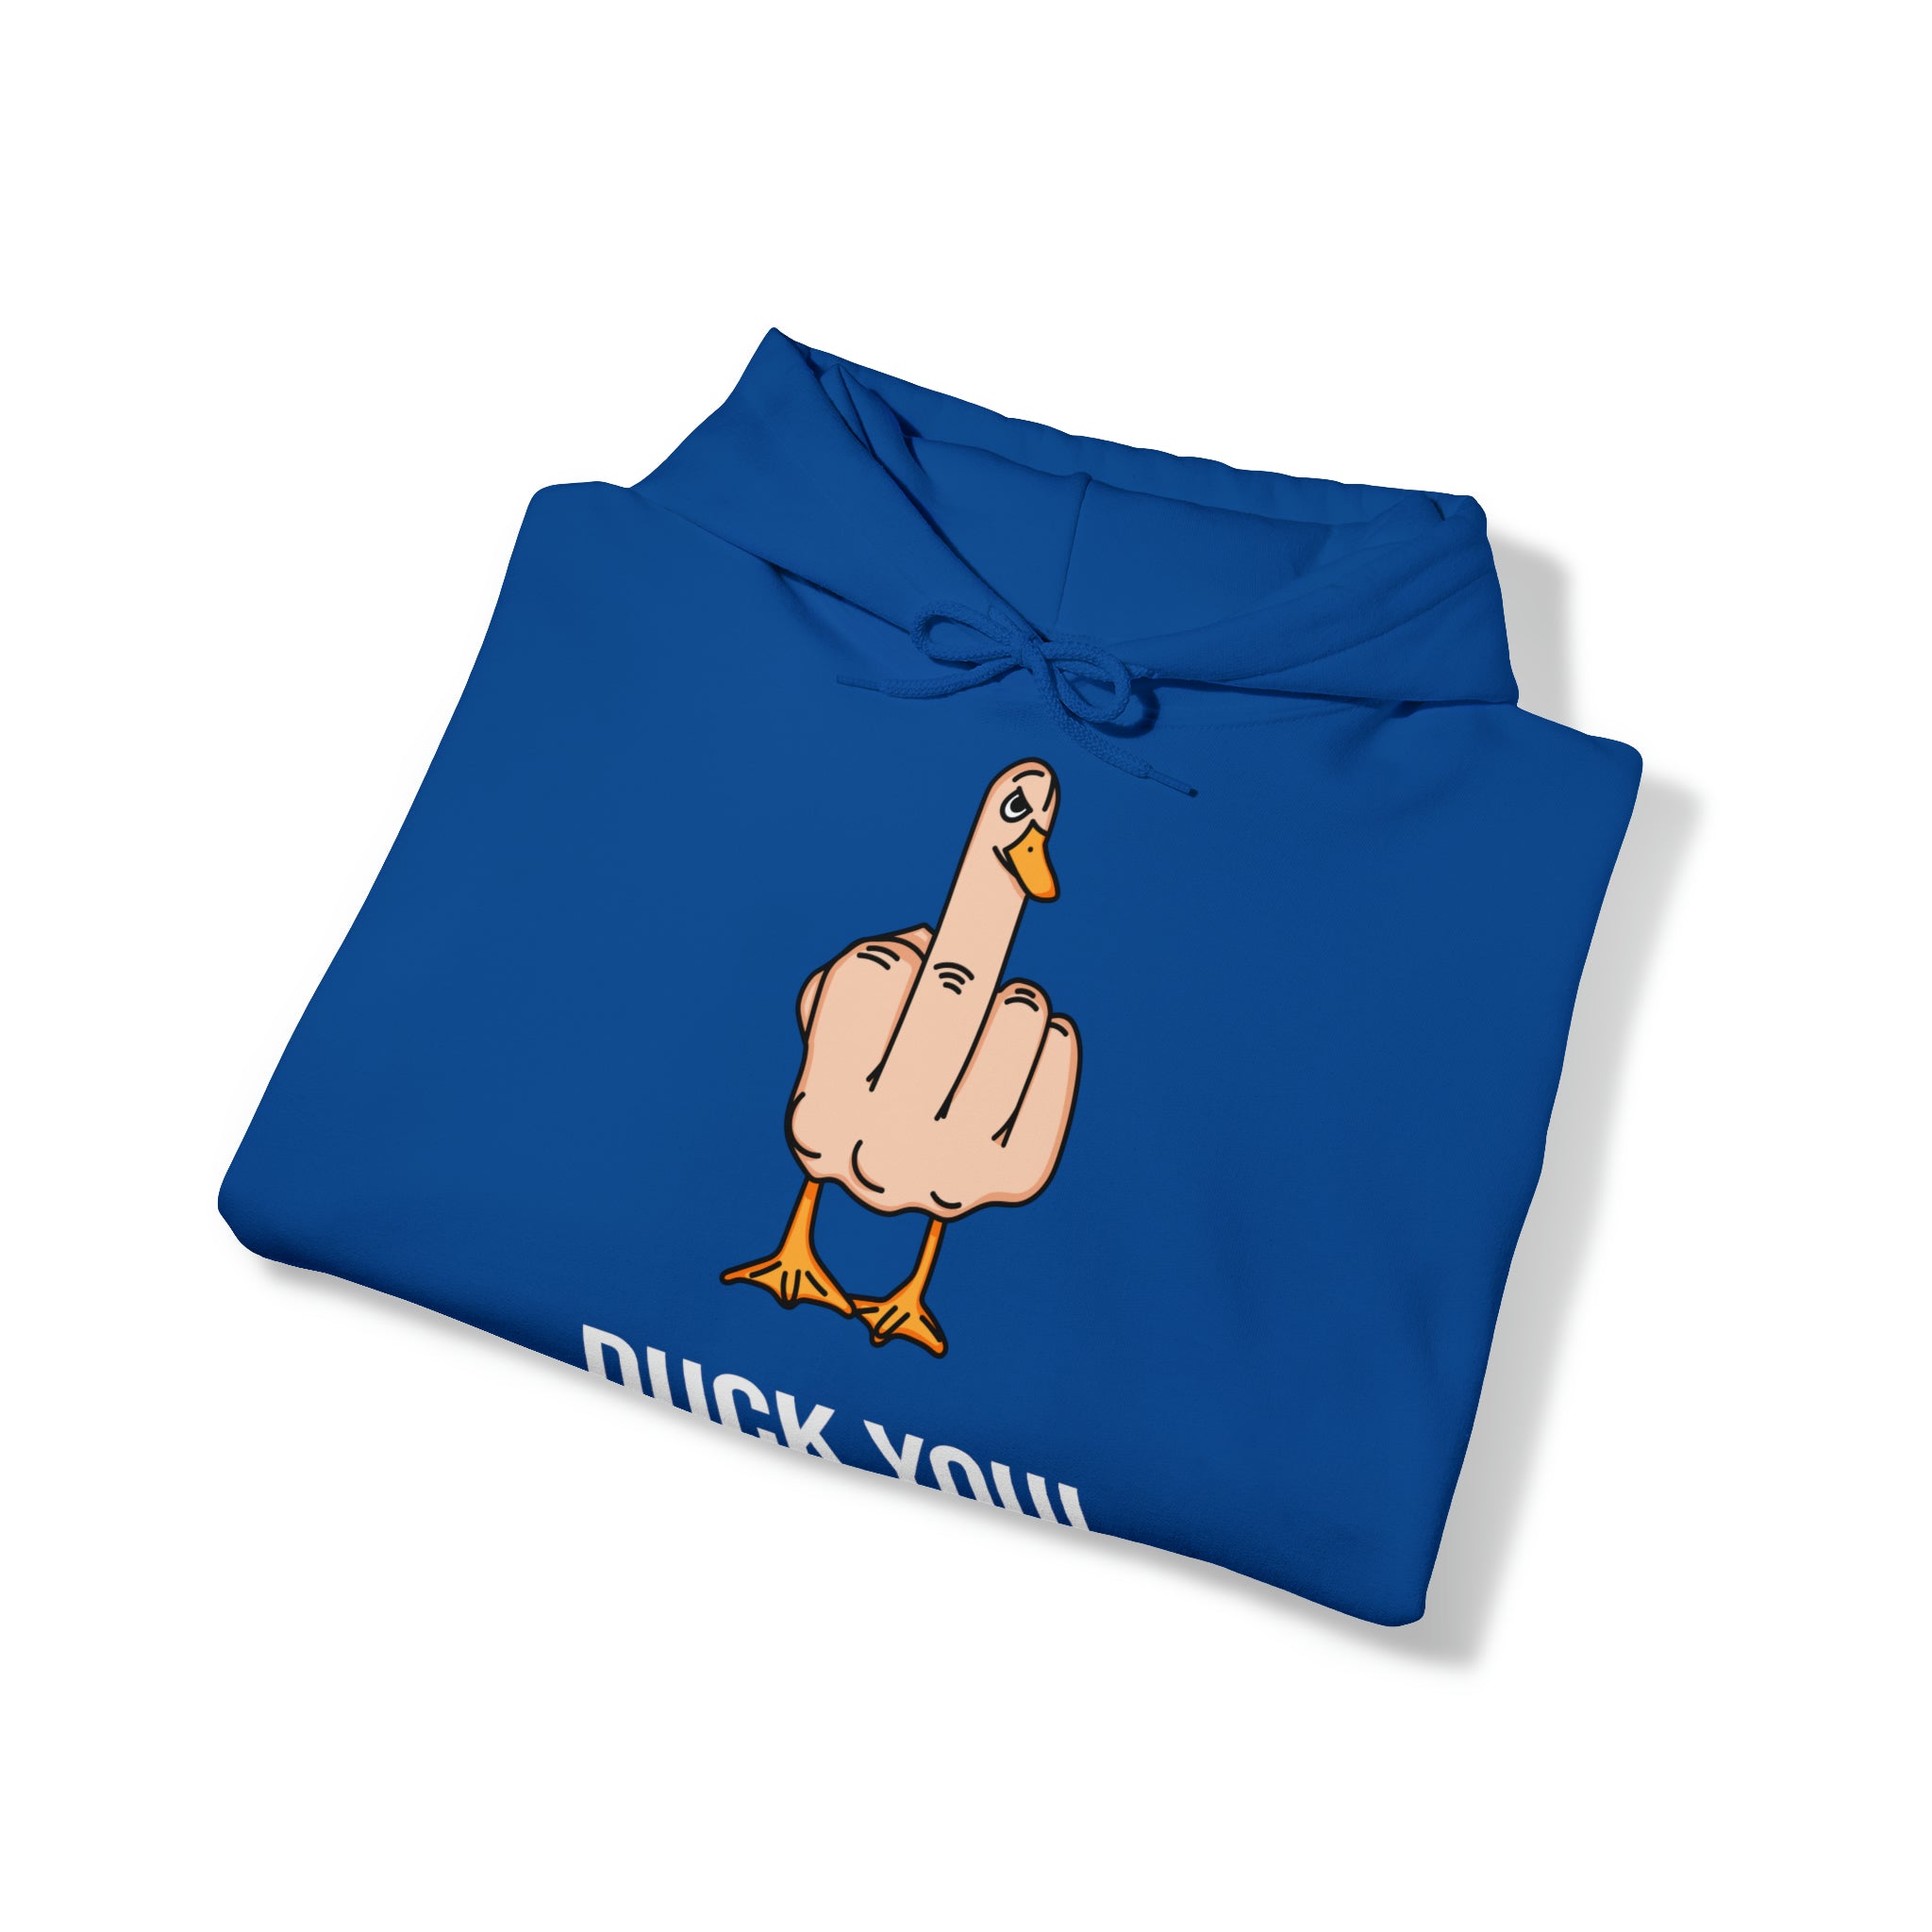 Duck You -  Hooded Sweatshirt